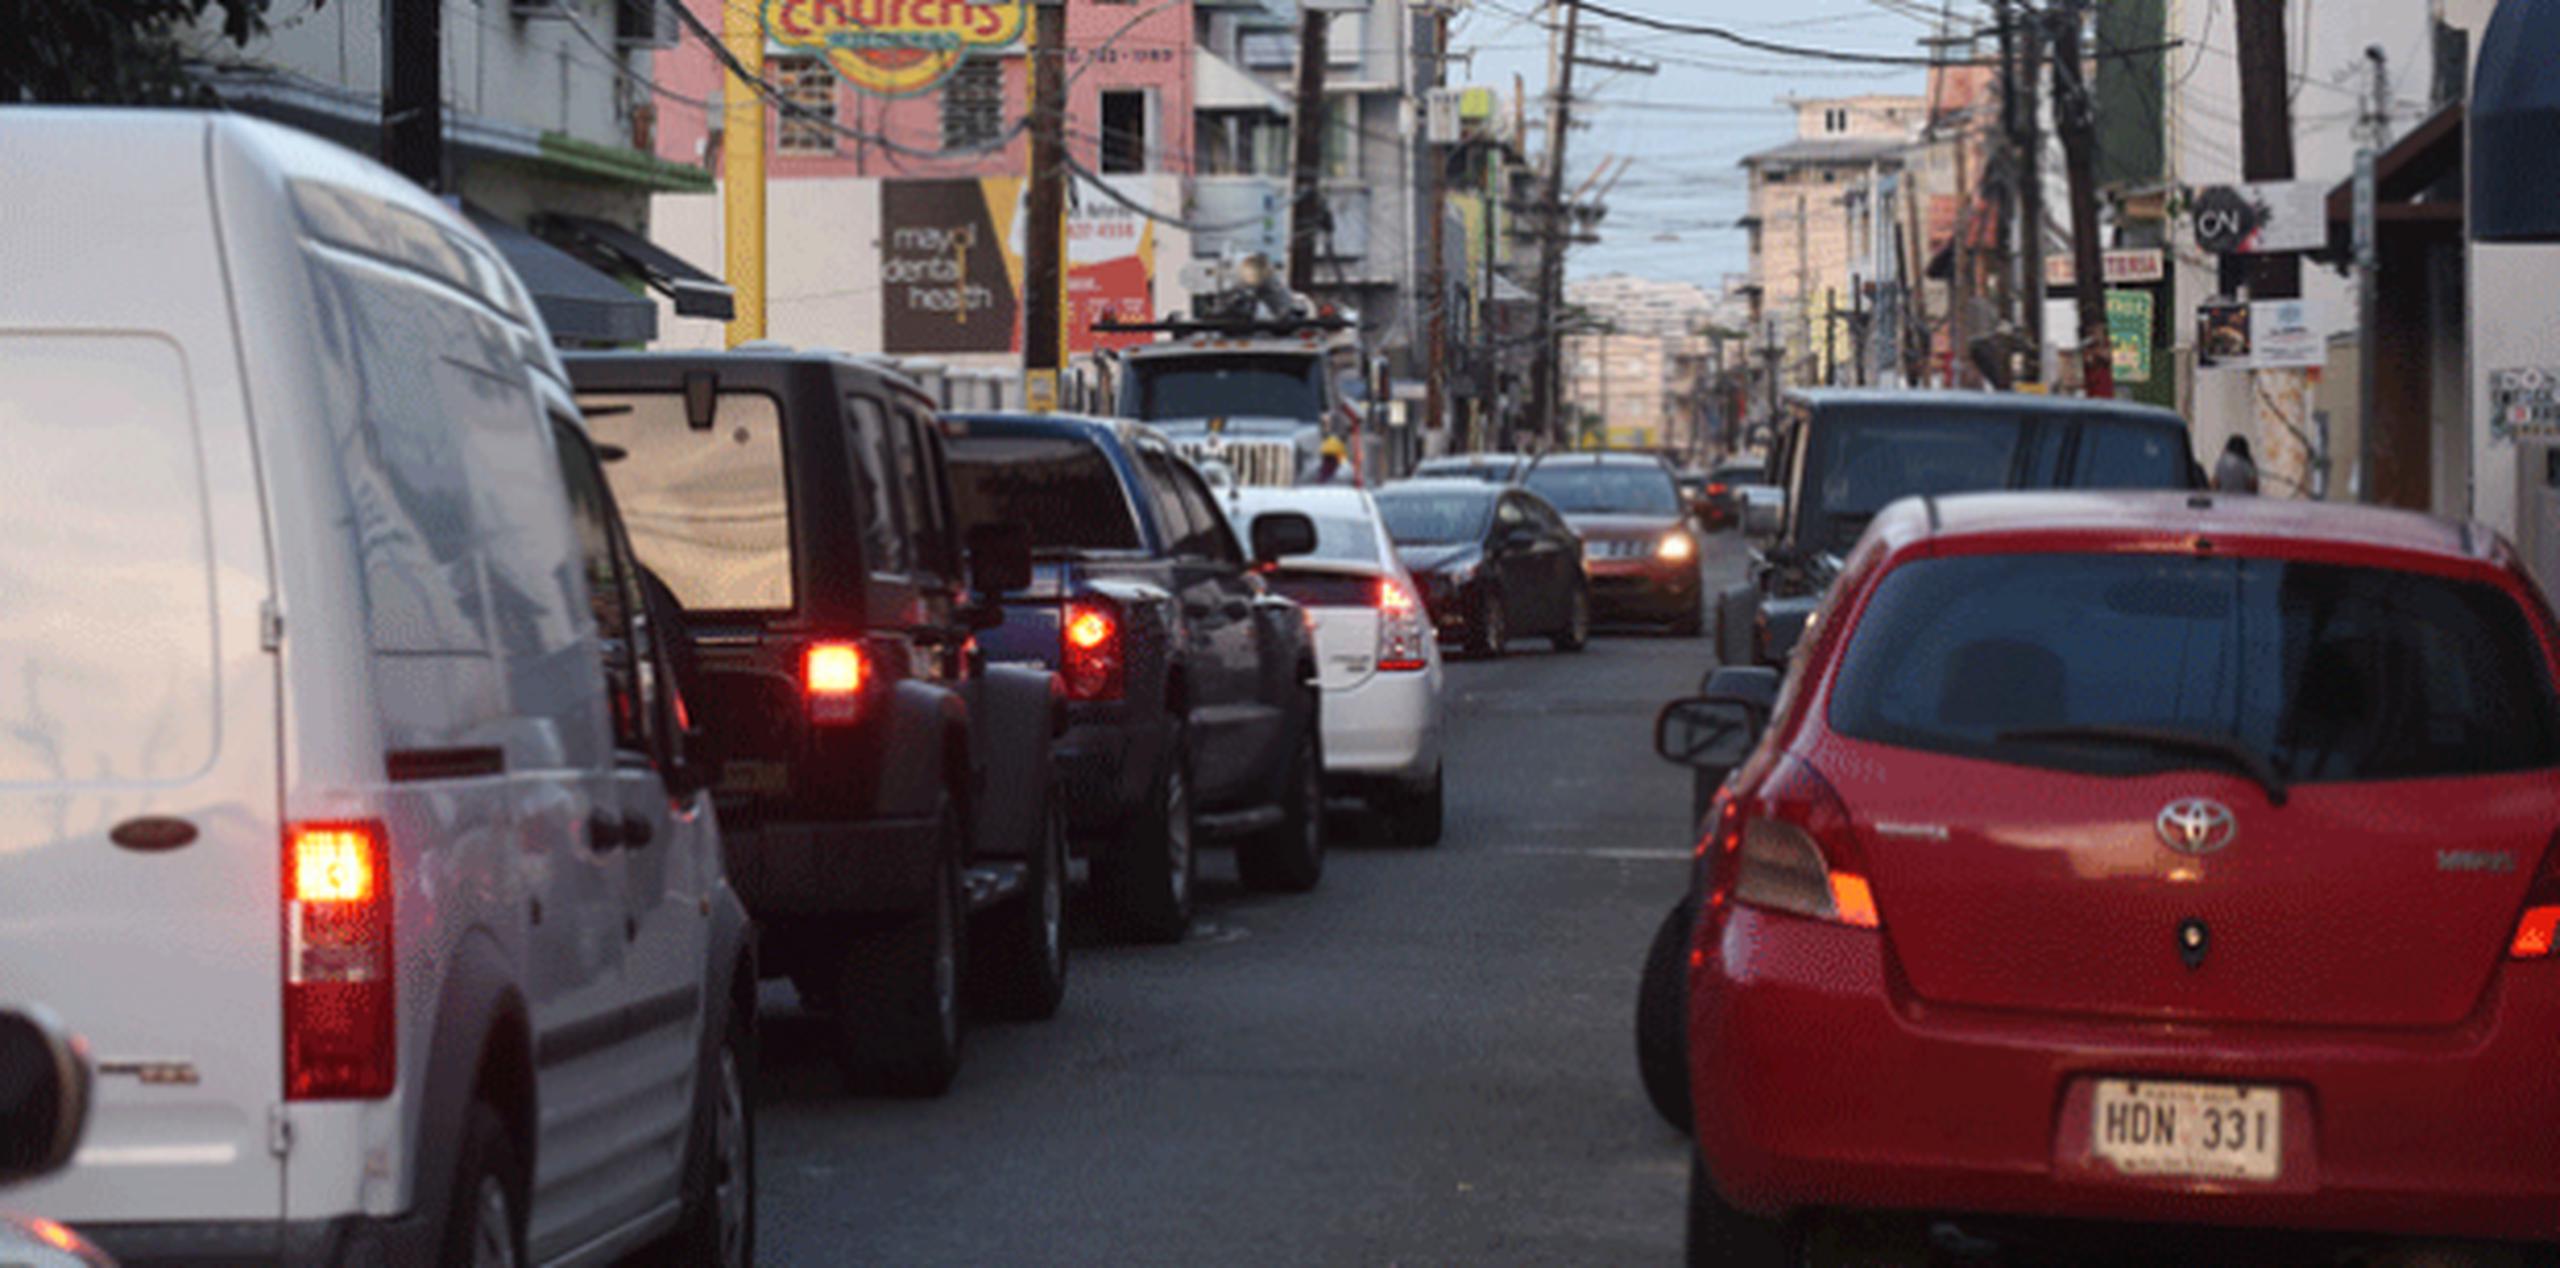 La congestión vehicular que se registra atropella el bloqueo a las entradas de las casas y aumenta la falta de estacionamientos. (Para Zona Urbana / Ingrid Torres)